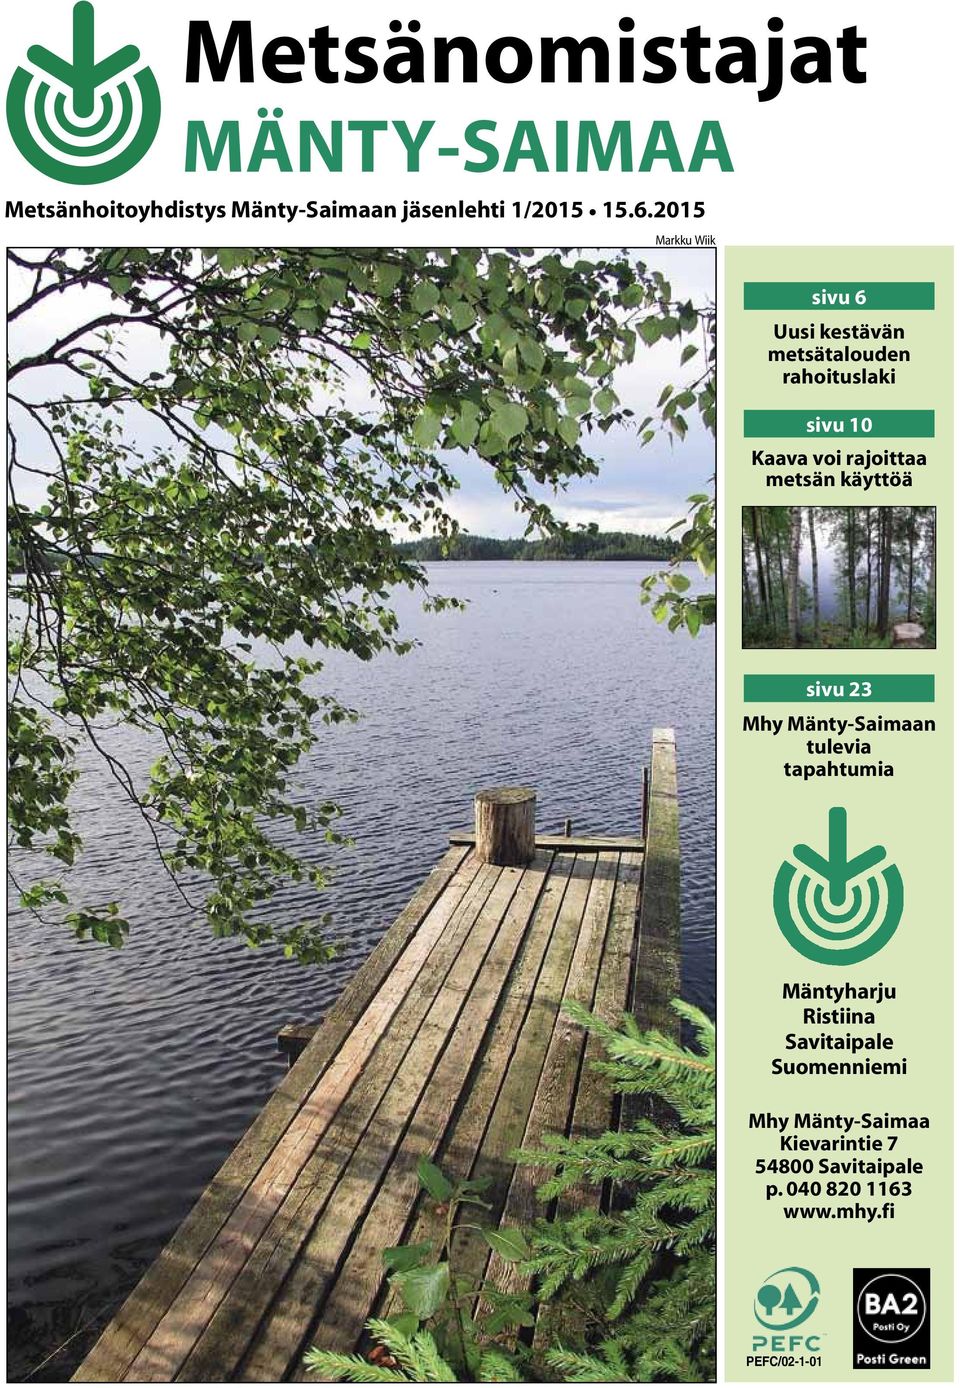 2015 Markku Wiik sivu 6 Uusi kestävän metsätalouden rahoituslaki sivu 10 Kaava voi rajoittaa metsän käyttöä sivu 23 Mhy Mänty-Saimaan